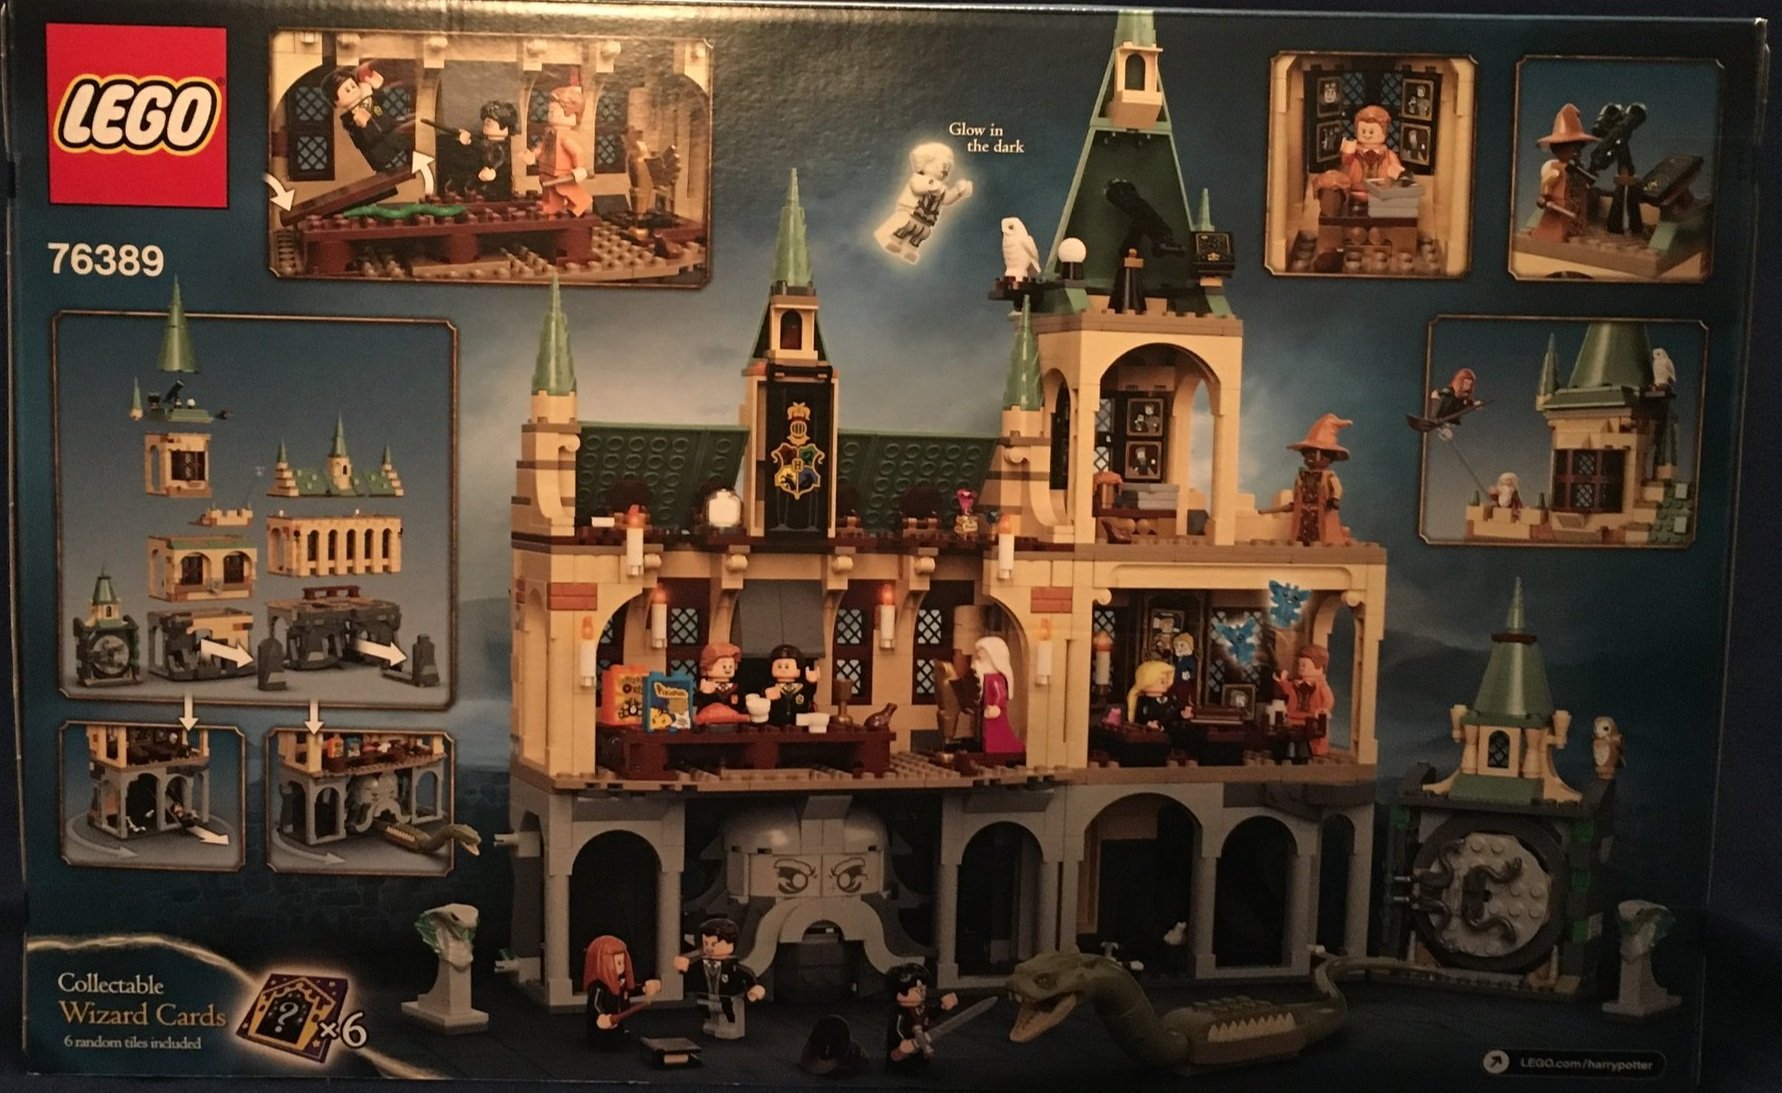 Lego Harry Potter: Hogwarts Cámara Secreta